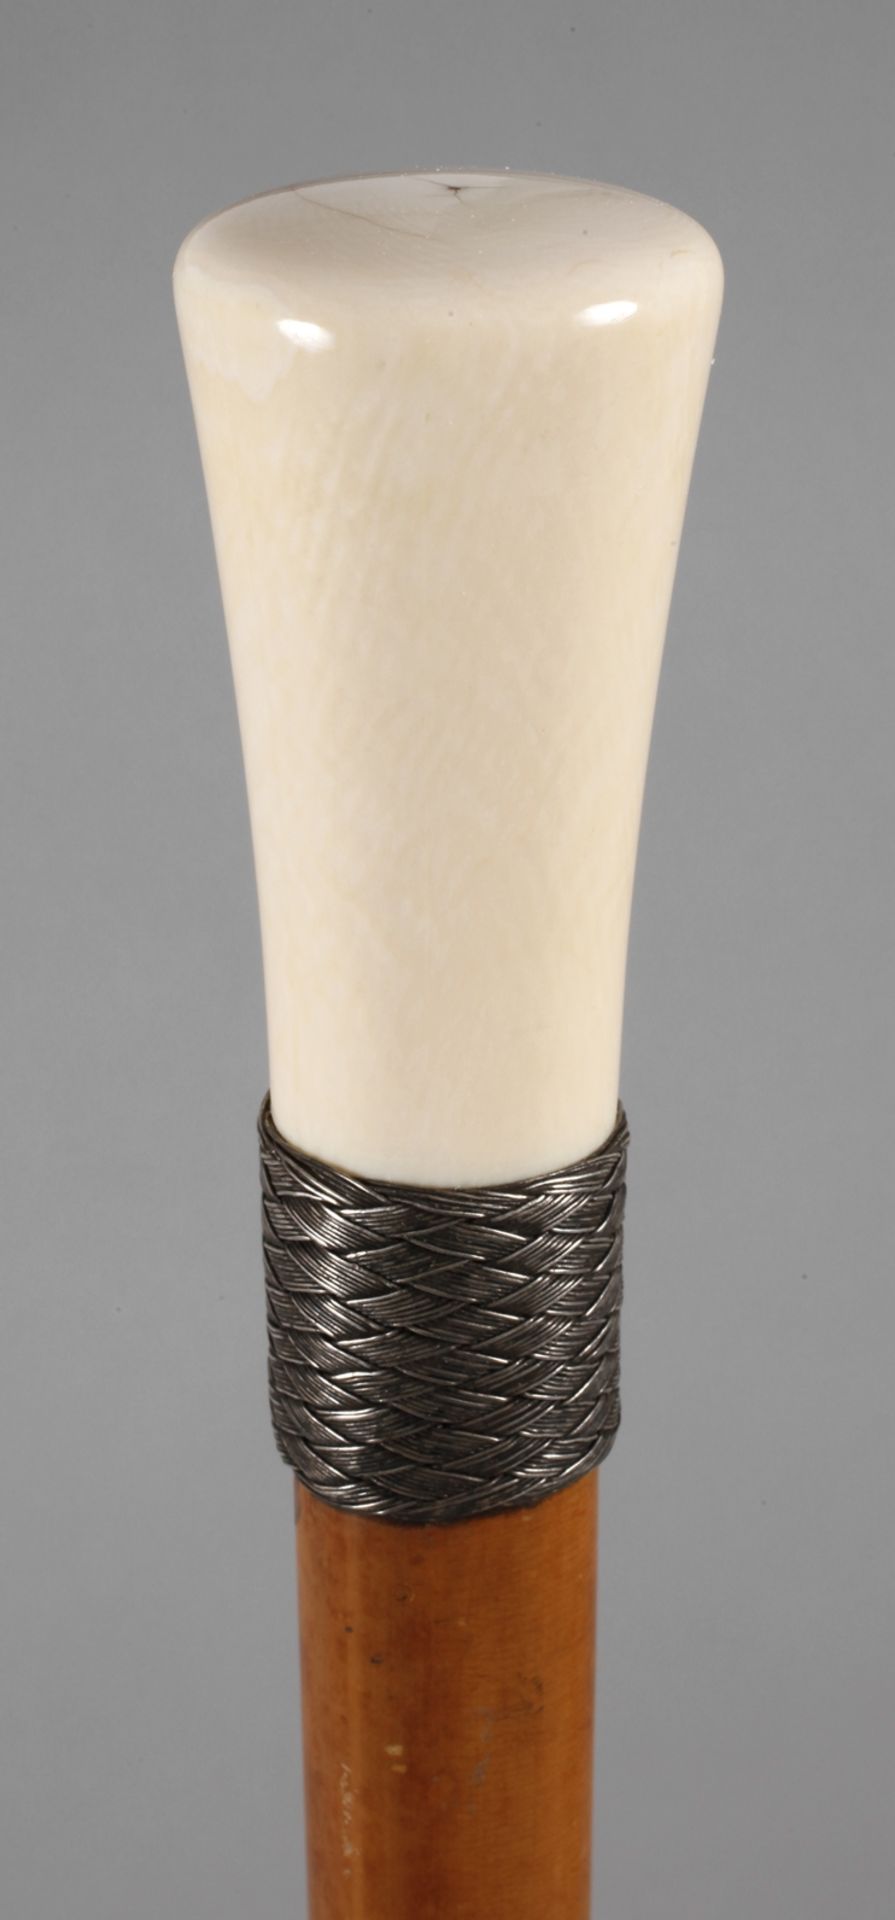 Spazierstock Elfenbein um 1890, hoher, konisch zulaufender Knauf aus Elfenbein, geflochtene